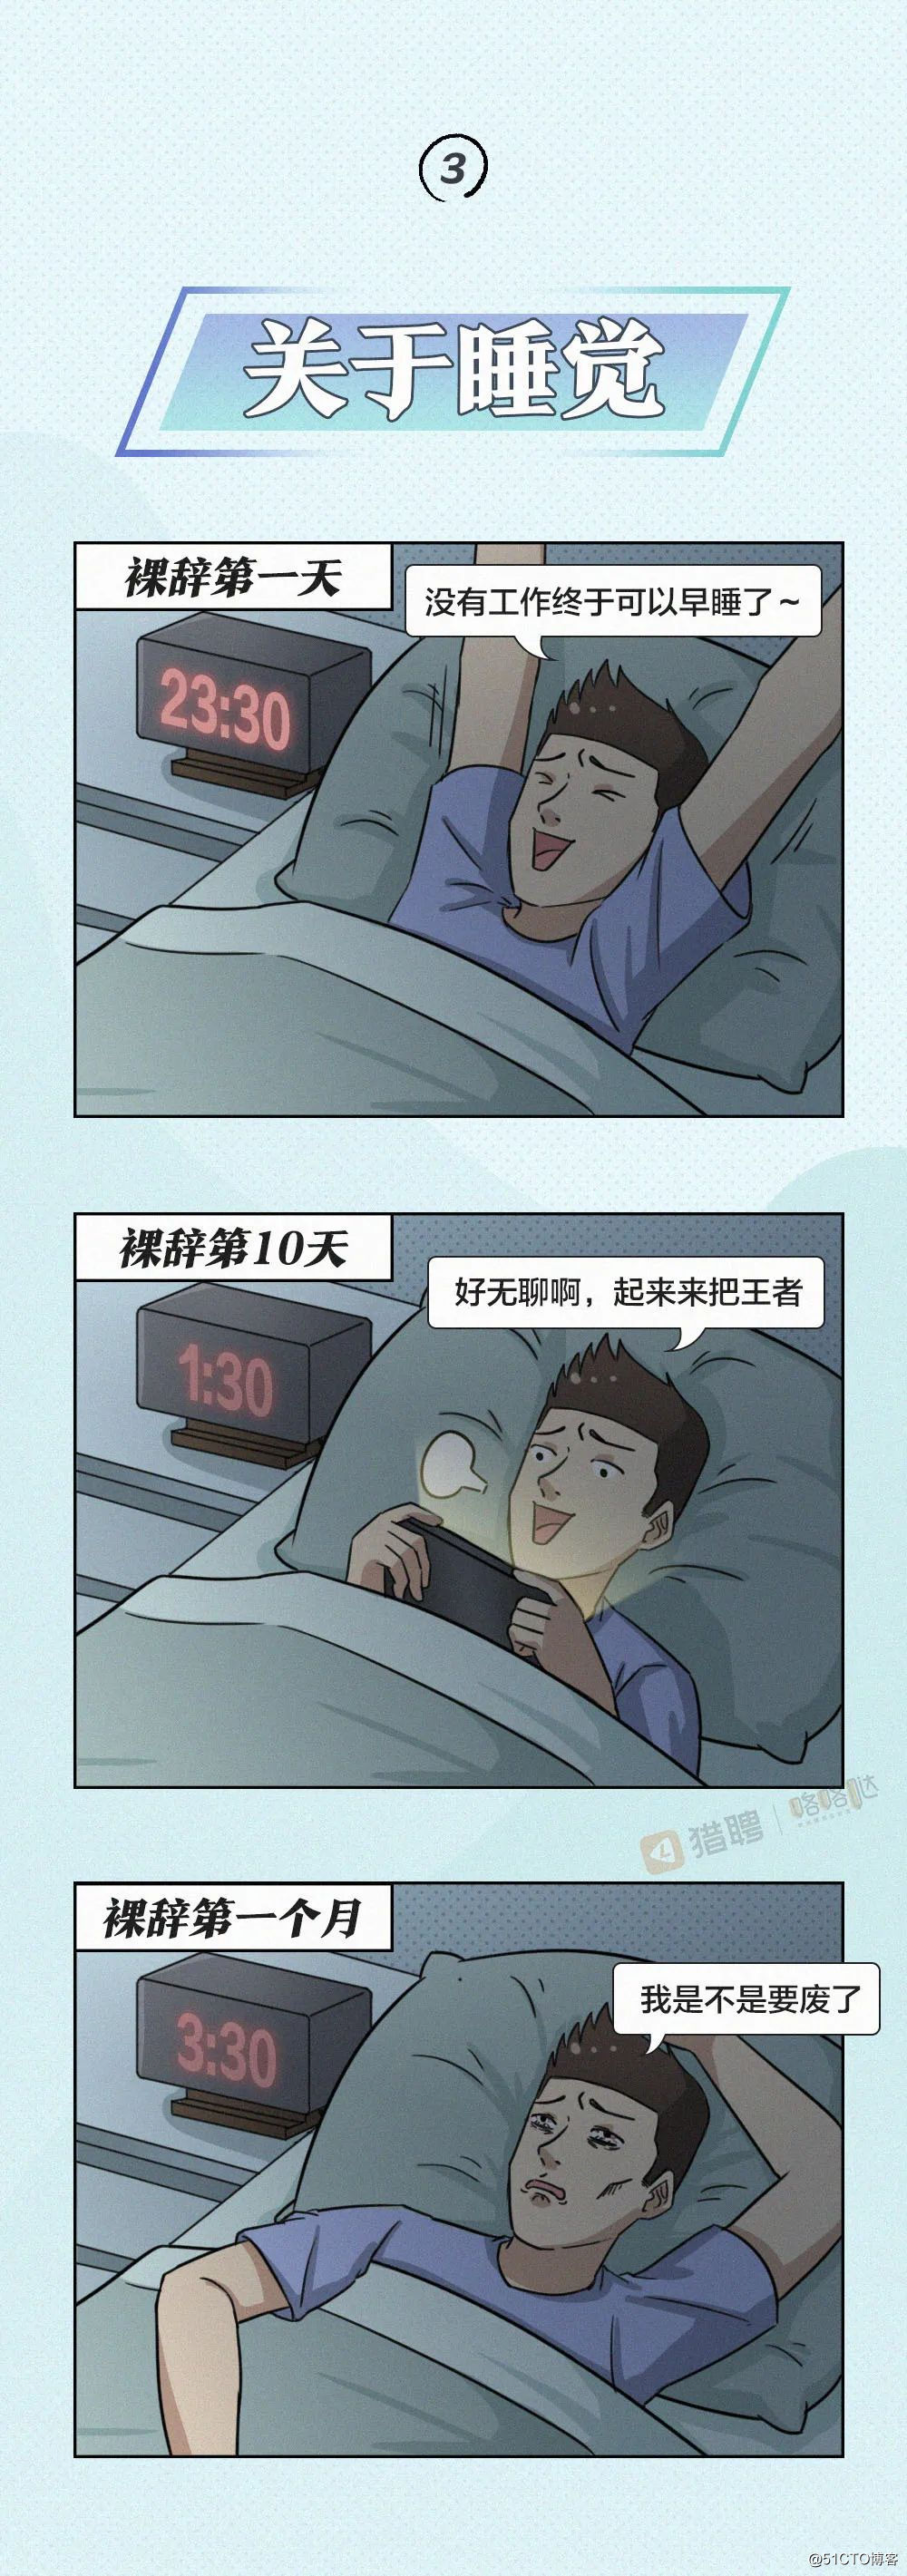 裸辞1天 vs 裸辞10天 vs 裸辞一个月_微软_04